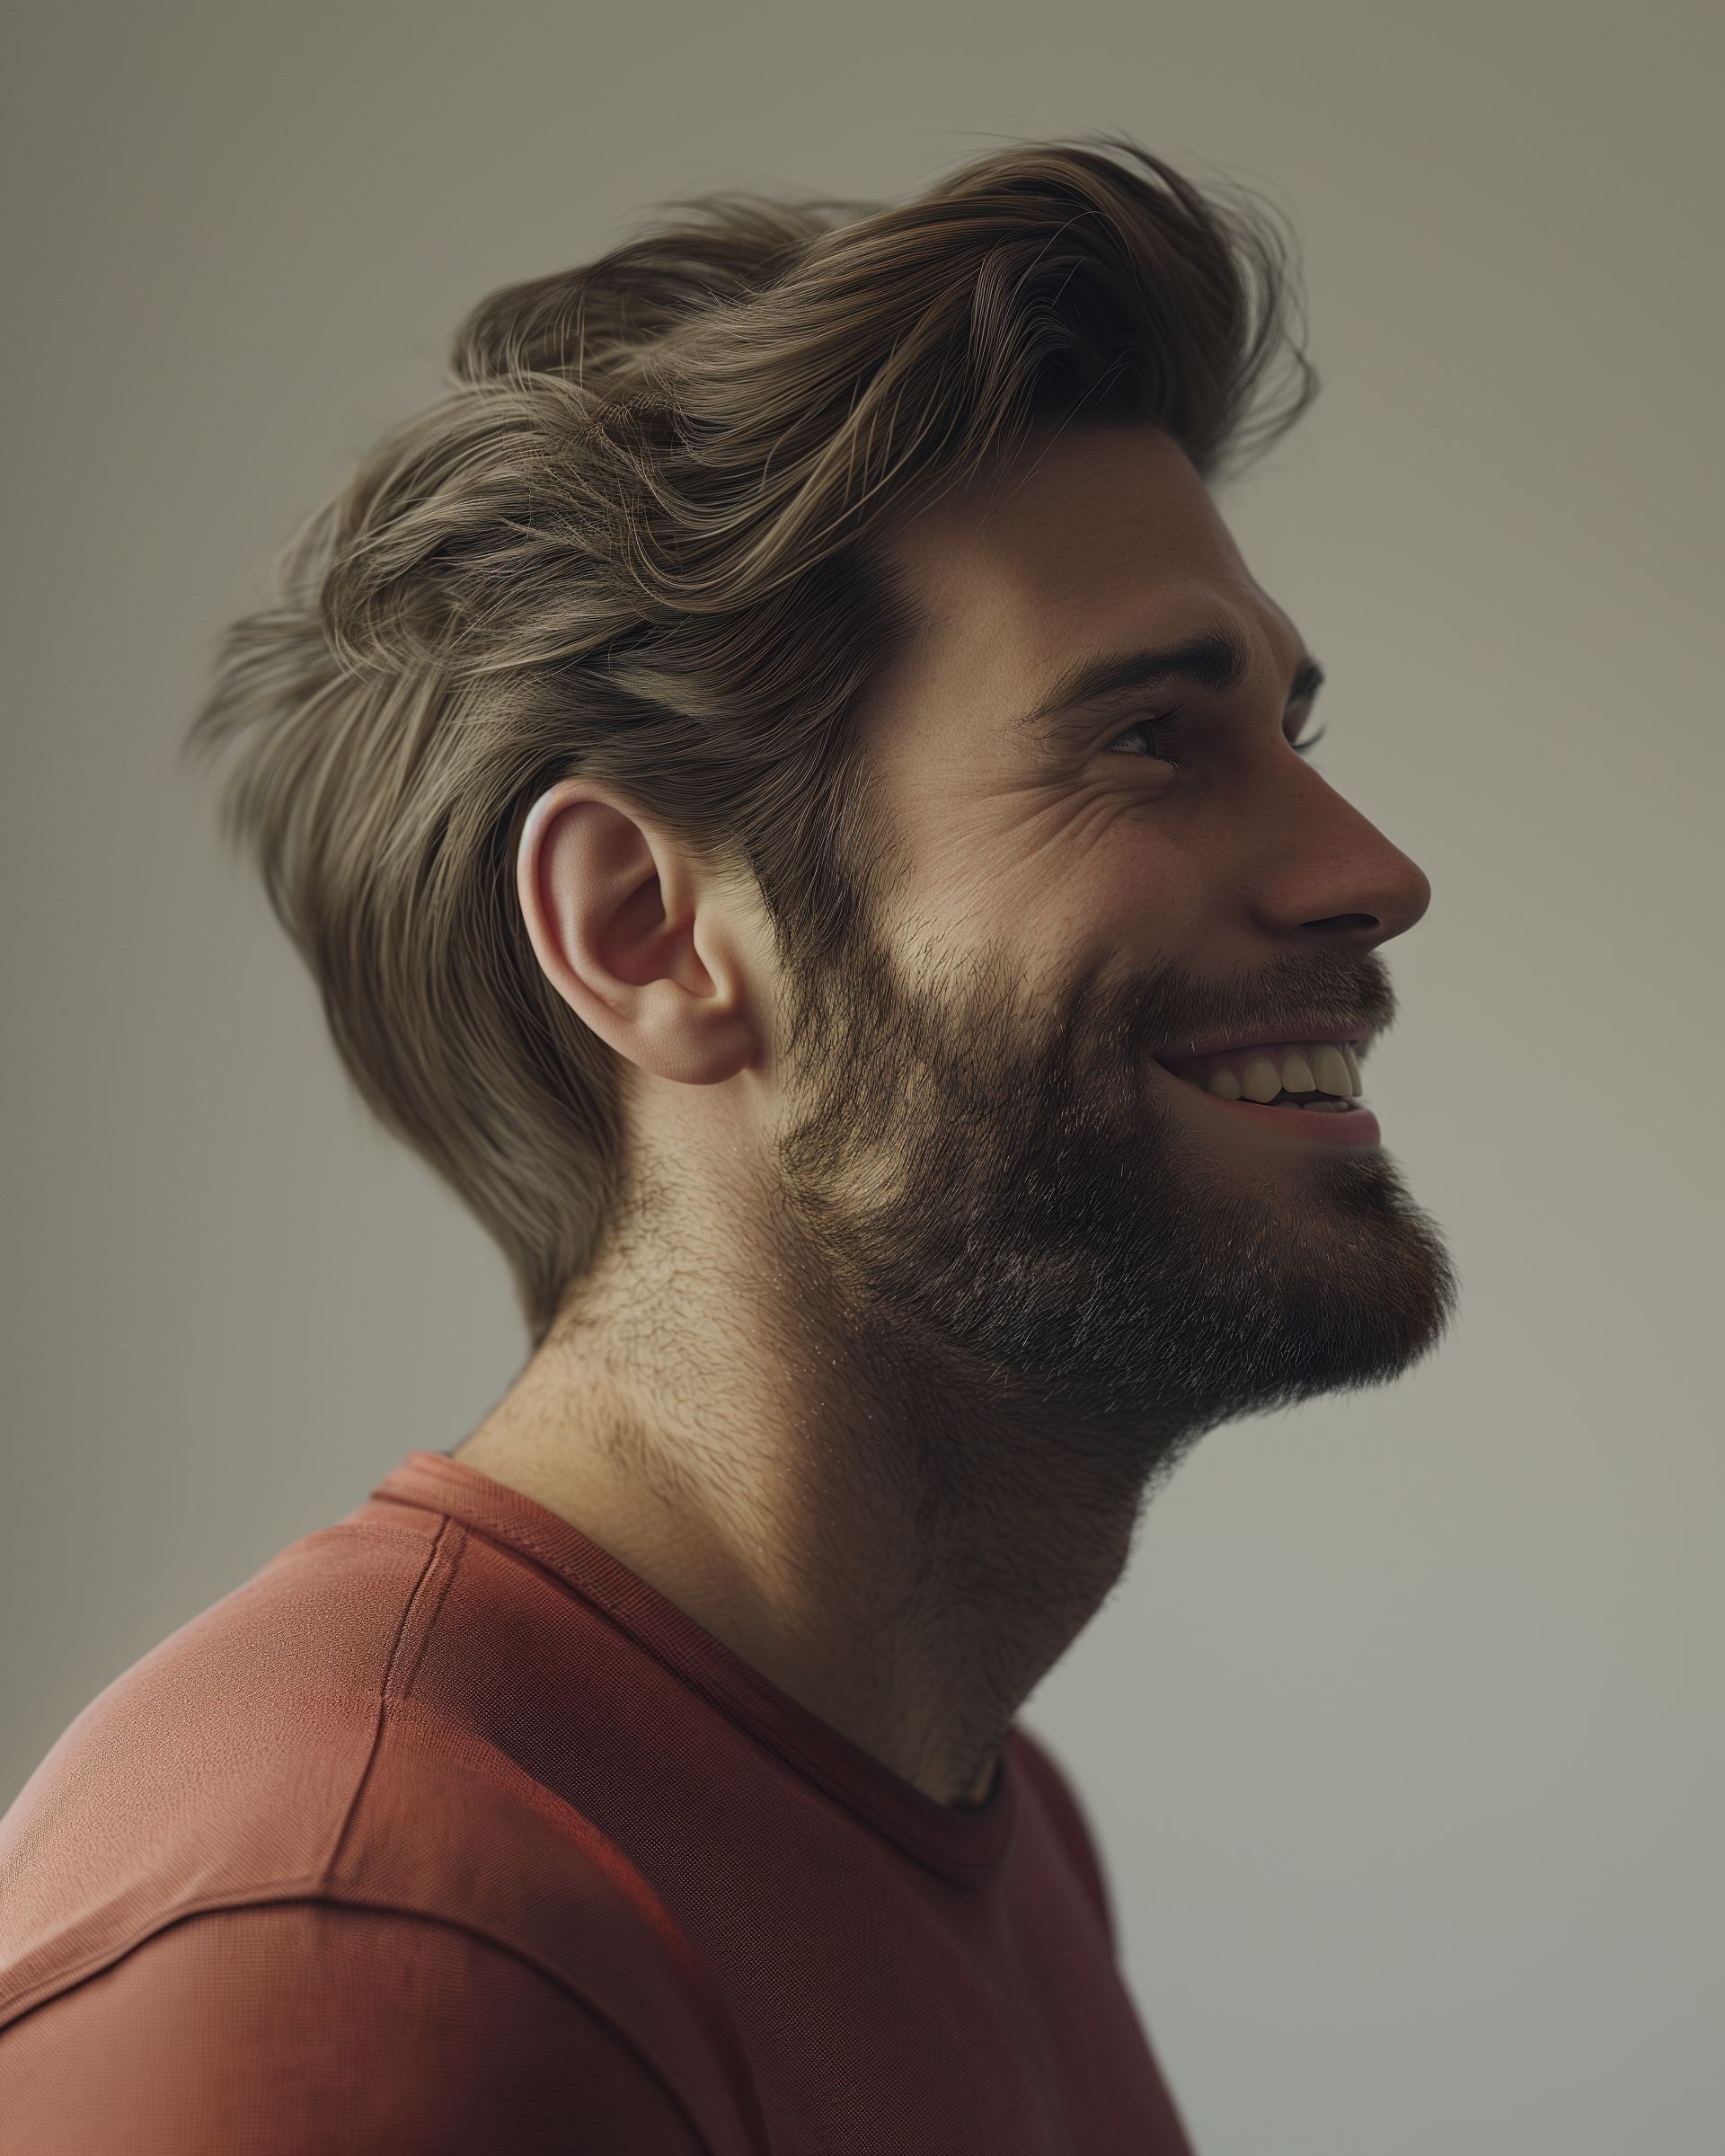 Un hombre sonriente | Fuente: Midjourney